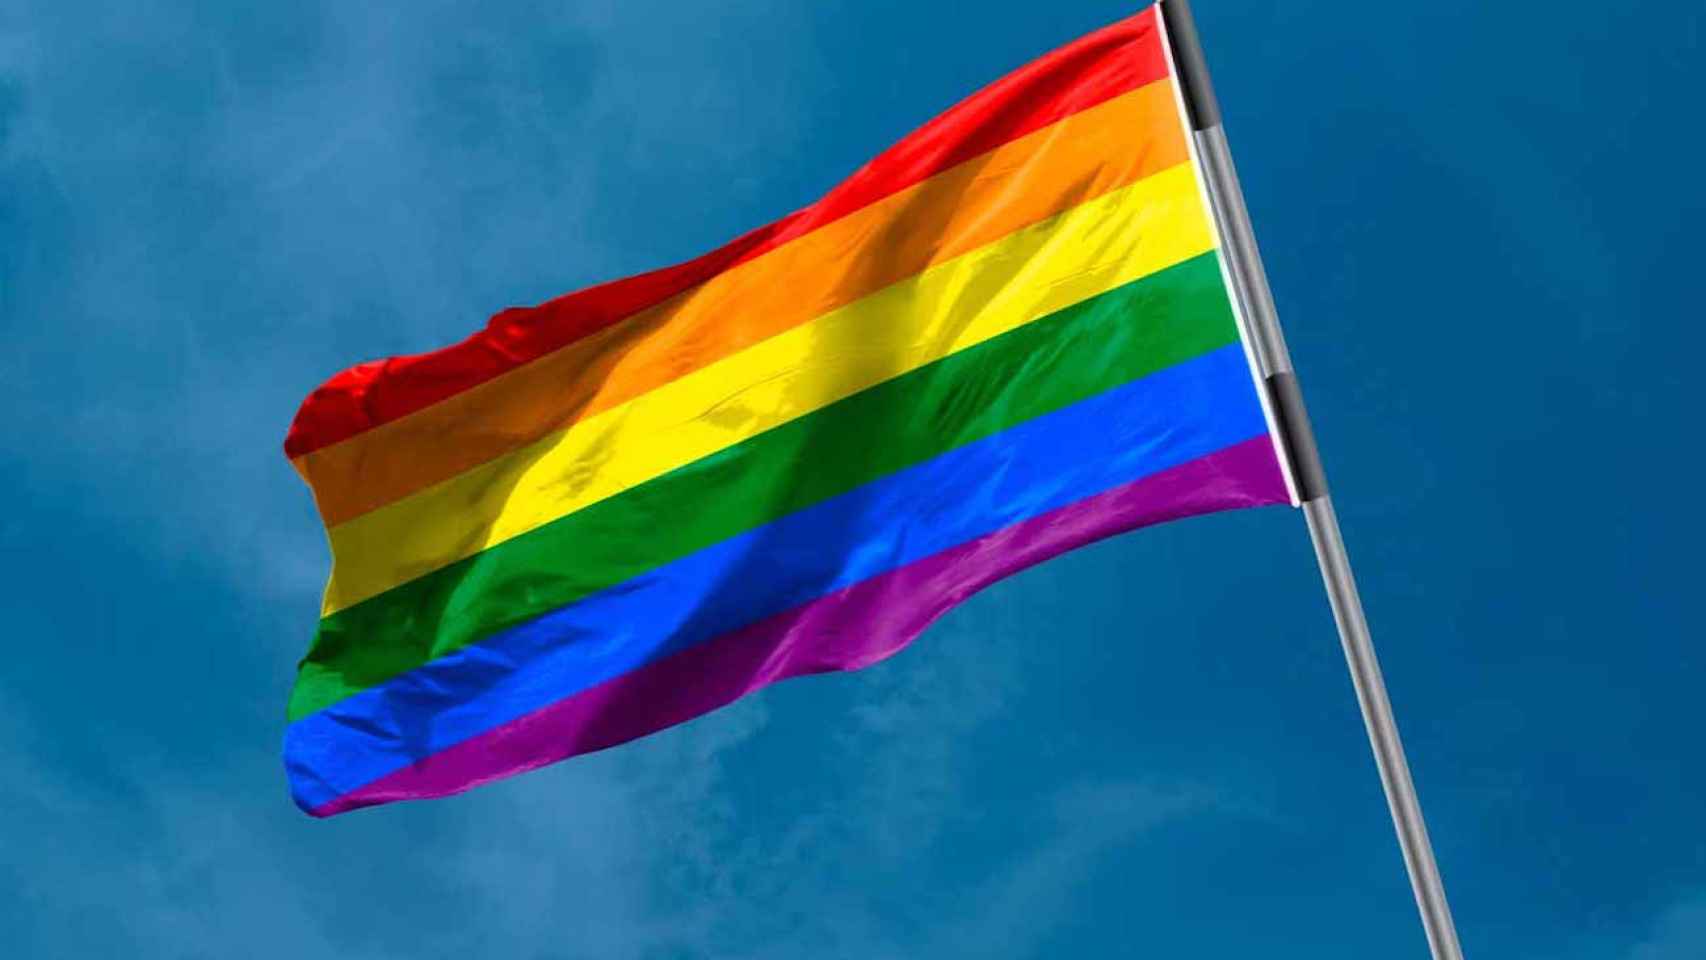 Los colores de la bandera del Orgullo Gay y el significado de estos